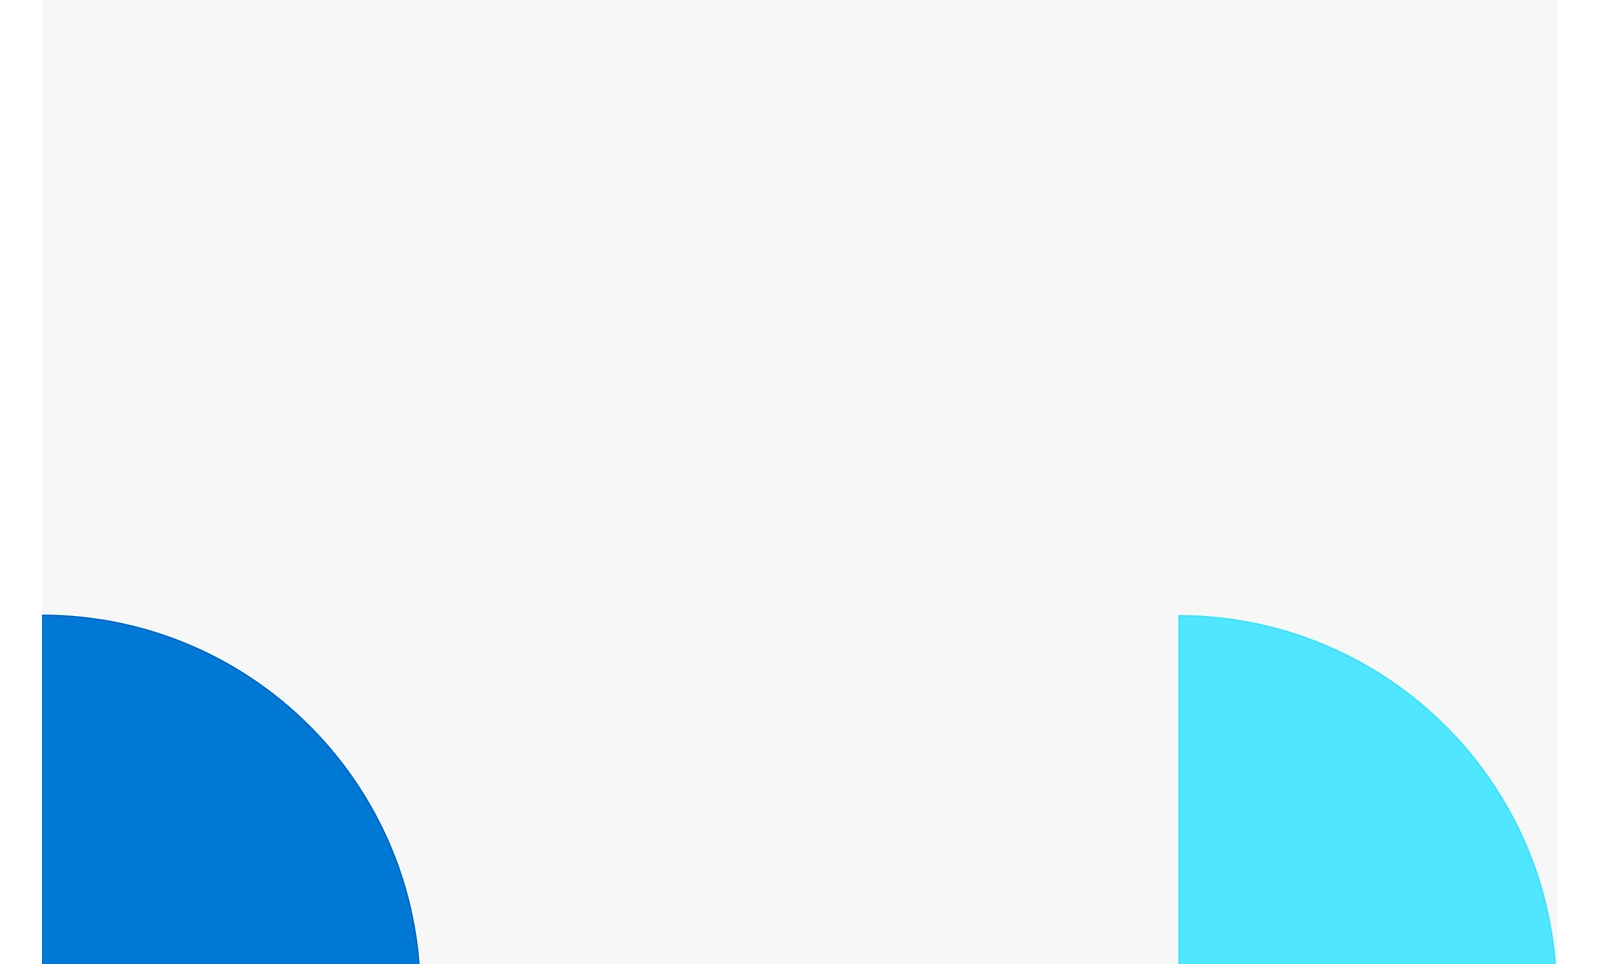 Två överlappande cirkelformer med vit bakgrund, en blå till vänster och en ljusare blå till höger.